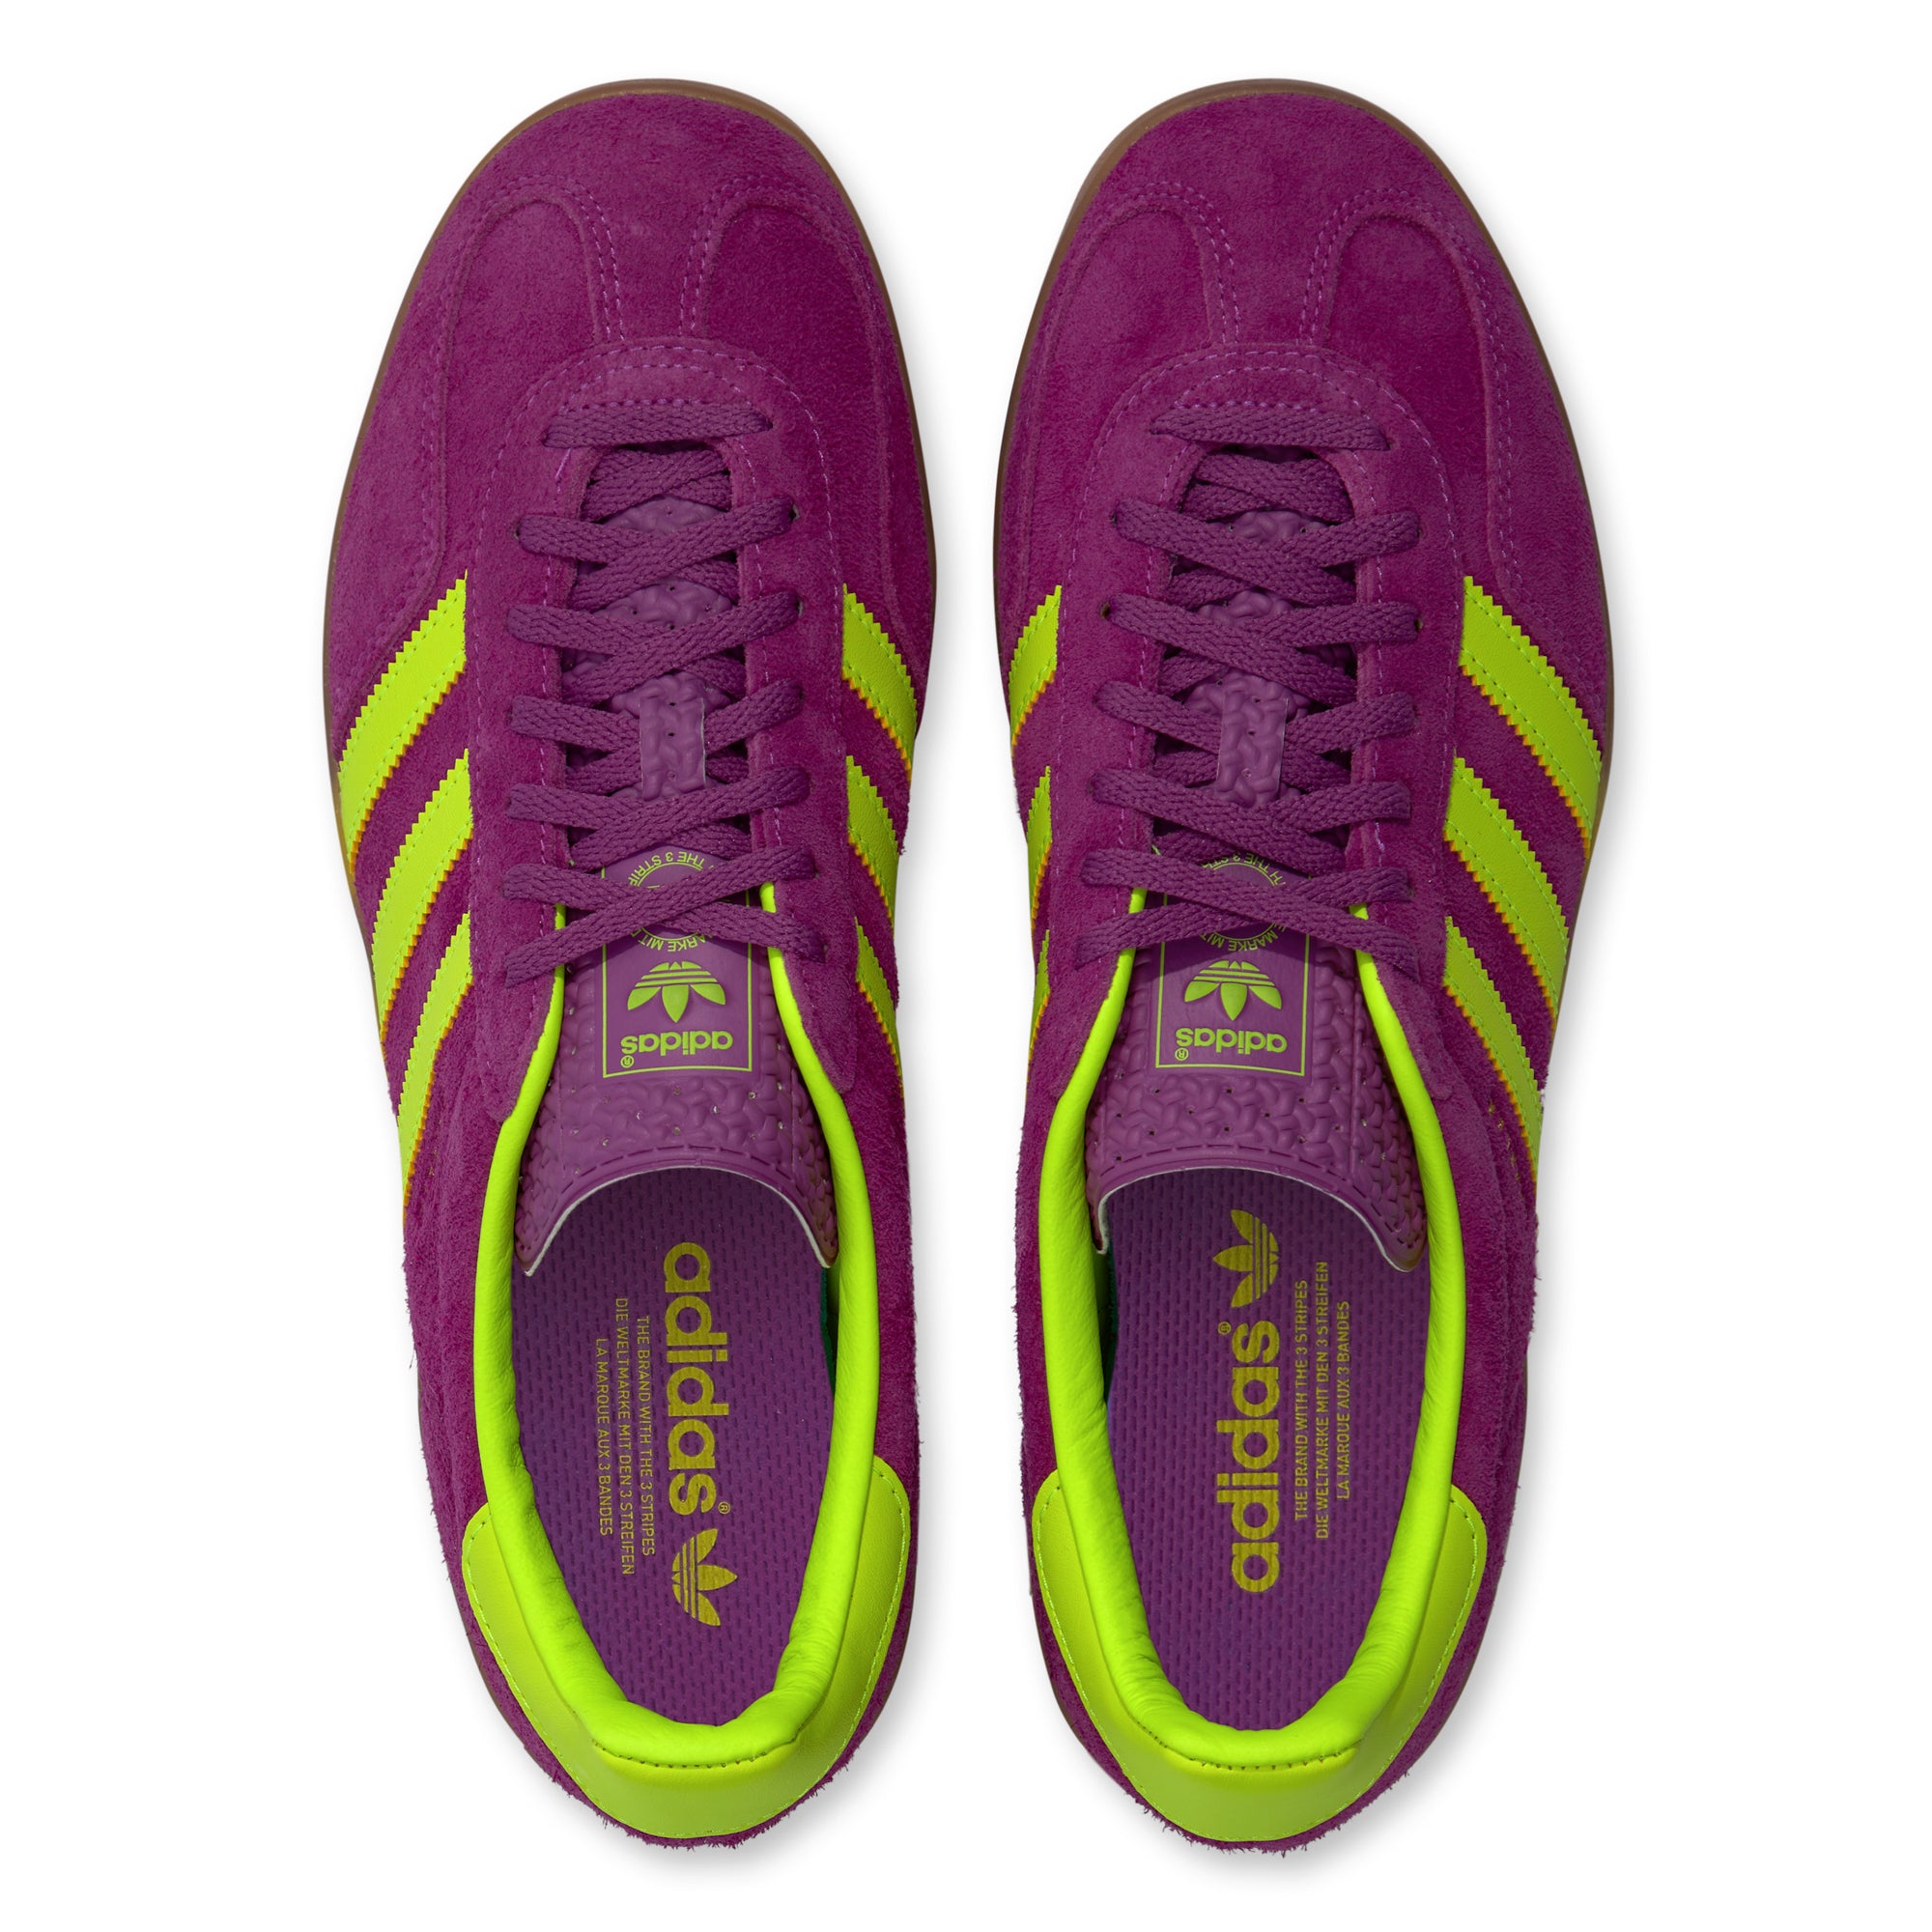 Adidas - Men's Gazelle Indoor - (Shock Purple/Yellow) | Dover